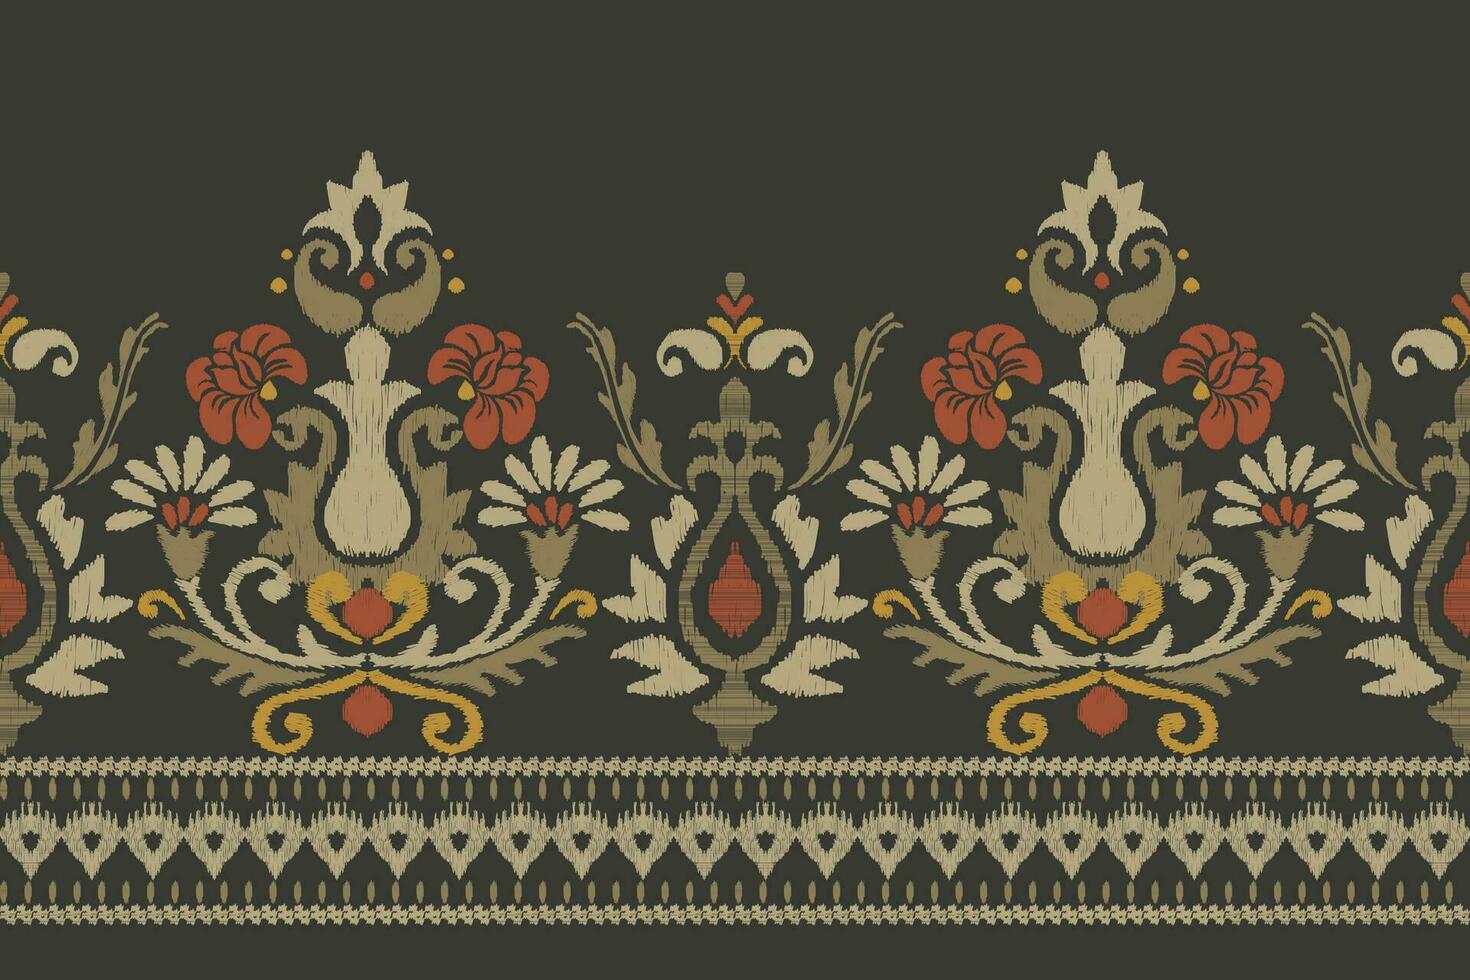 ikat blommig paisley broderi på mörk grön bakgrund.ikat etnisk orientalisk mönster traditionell.aztec stil abstrakt vektor illustration.design för textur, tyg, kläder, inslagning, dekoration, sarong.